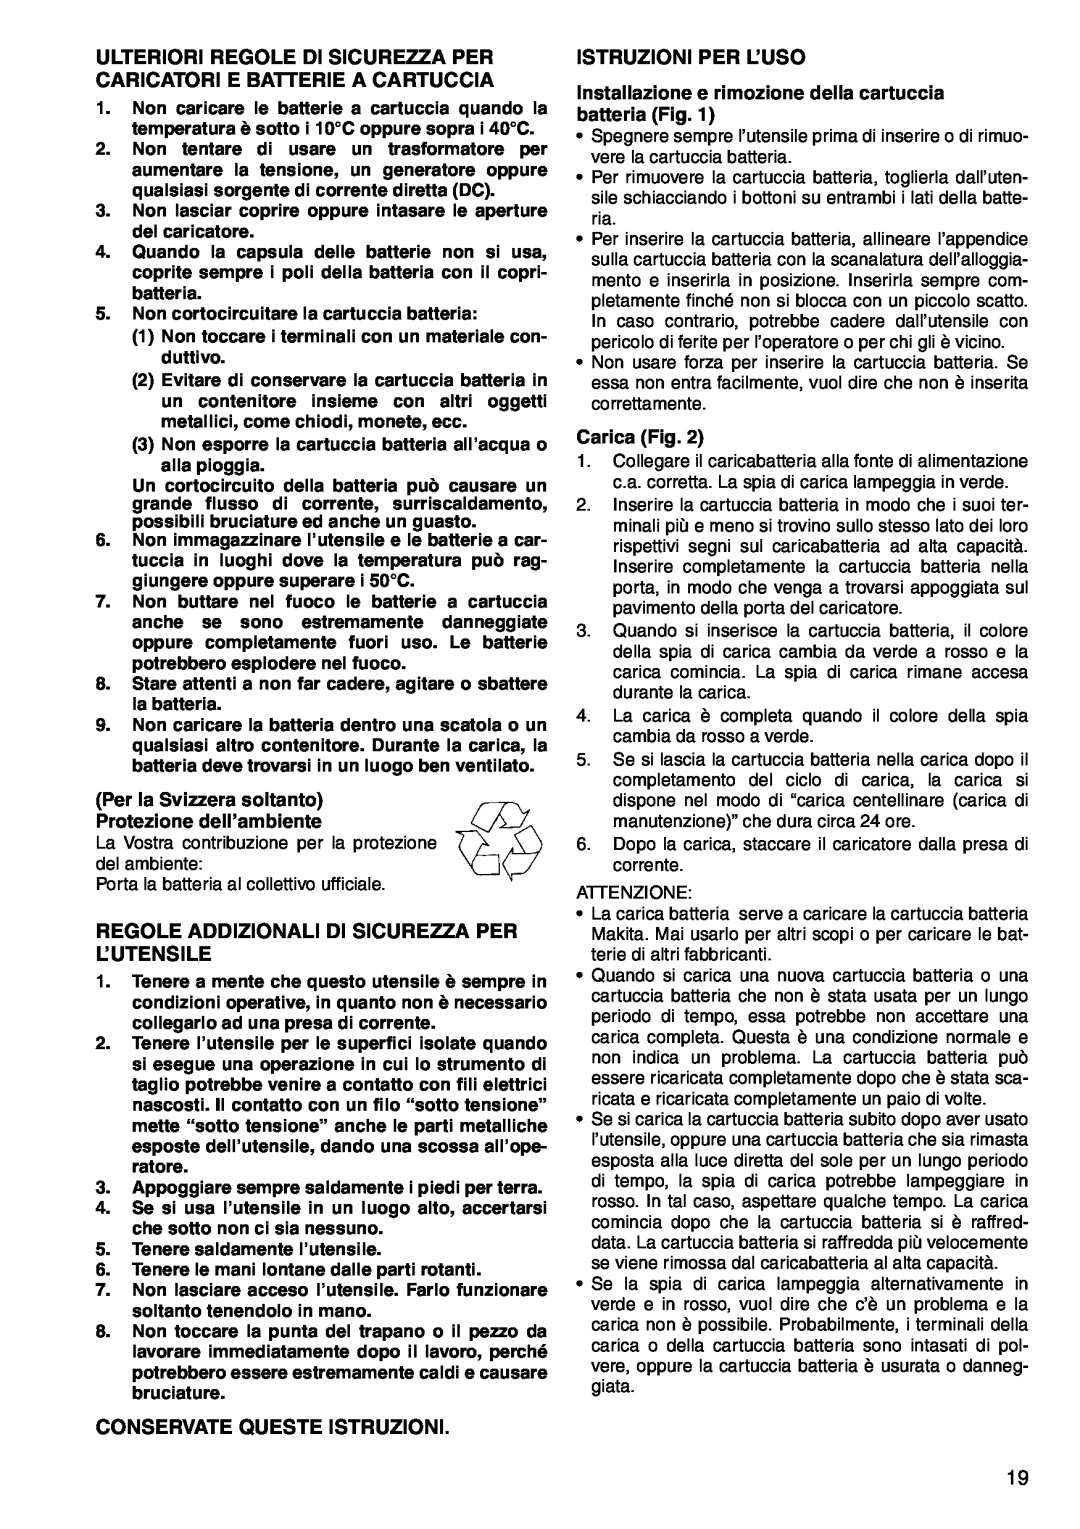 Makita 6207D Ulteriori Regole Di Sicurezza Per Caricatori E Batterie A Cartuccia, Conservate Queste Istruzioni, Carica Fig 